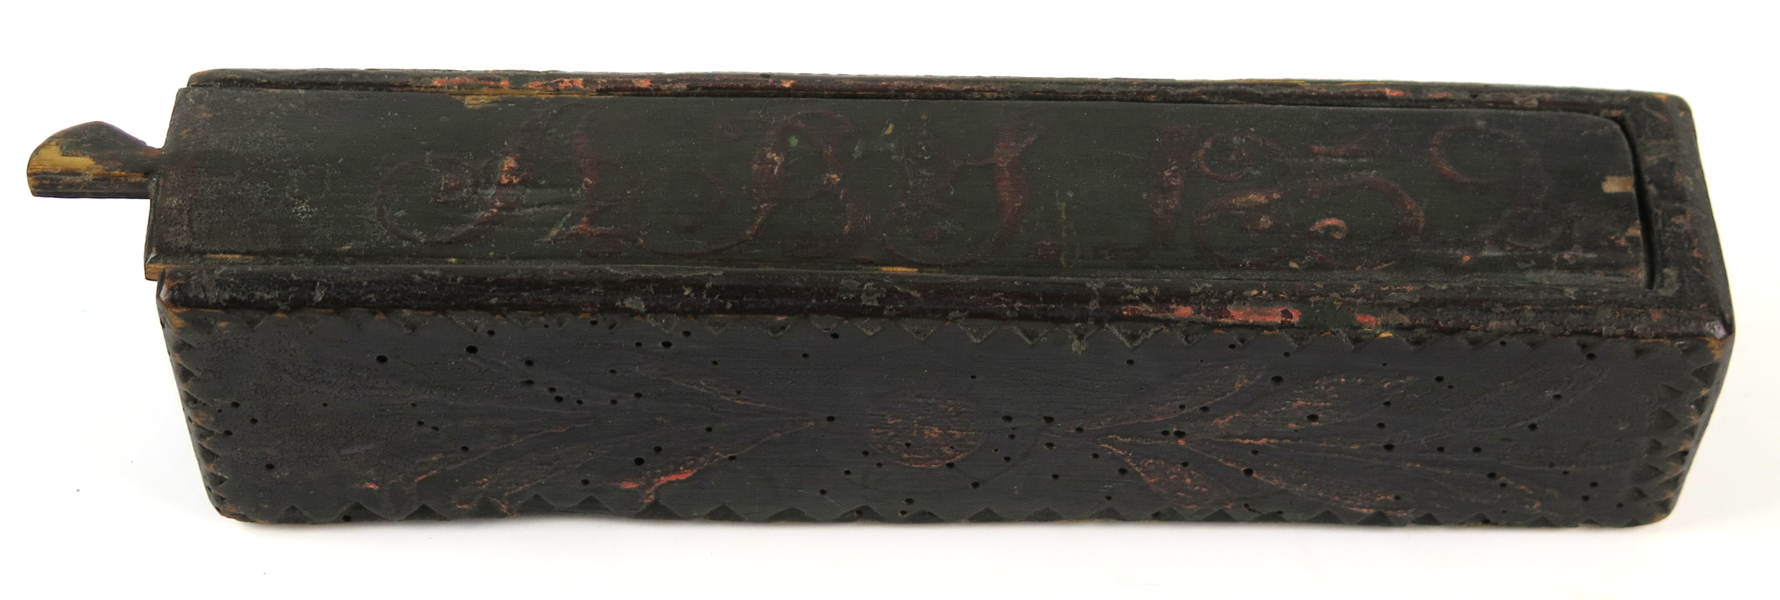 Rakskrin, skuret och bemålat trä, allmogearbete, 1800-talets 2 hälft, _14545a_lg.jpeg